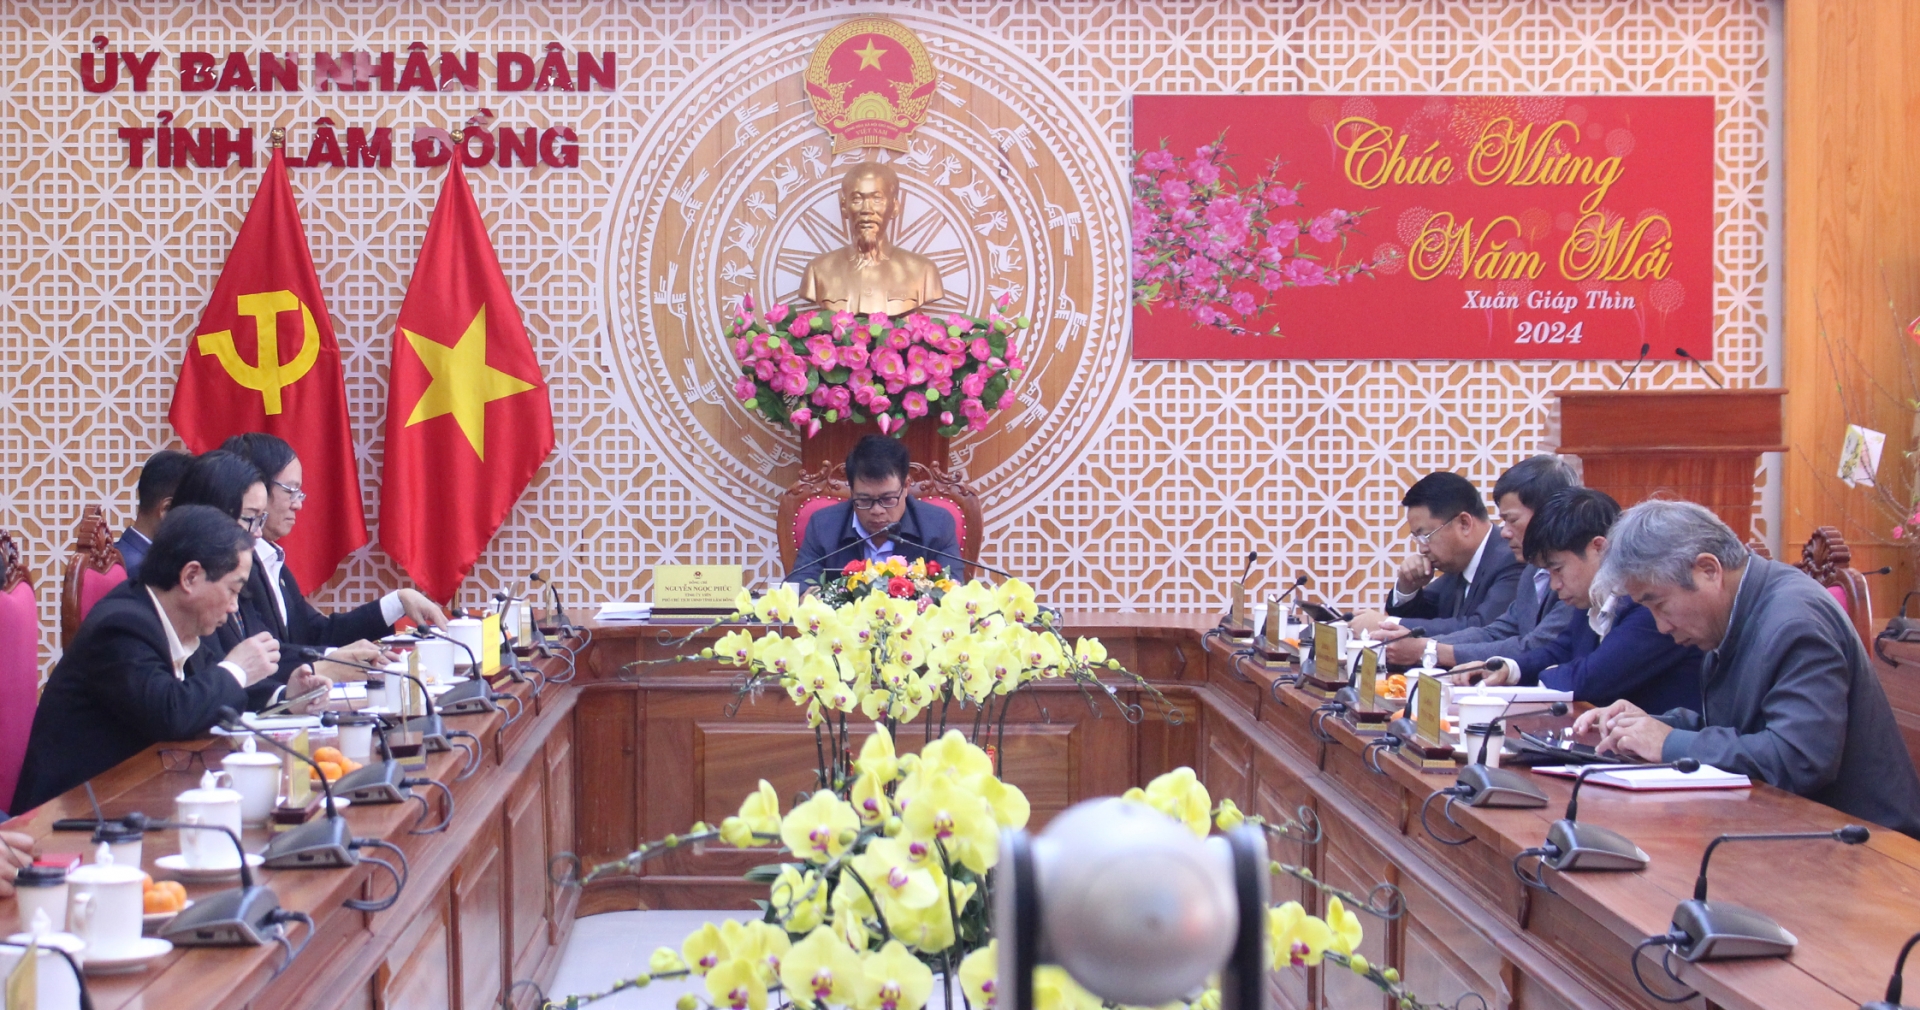 Phó Chủ tịch UBND tỉnh Nguyễn Ngọc Phúc và lãnh đạo các sở, ban, ngành tỉnh Lâm Đồng dự diễn đàn tại điểm cầu UBND tỉnh Lâm Đồng